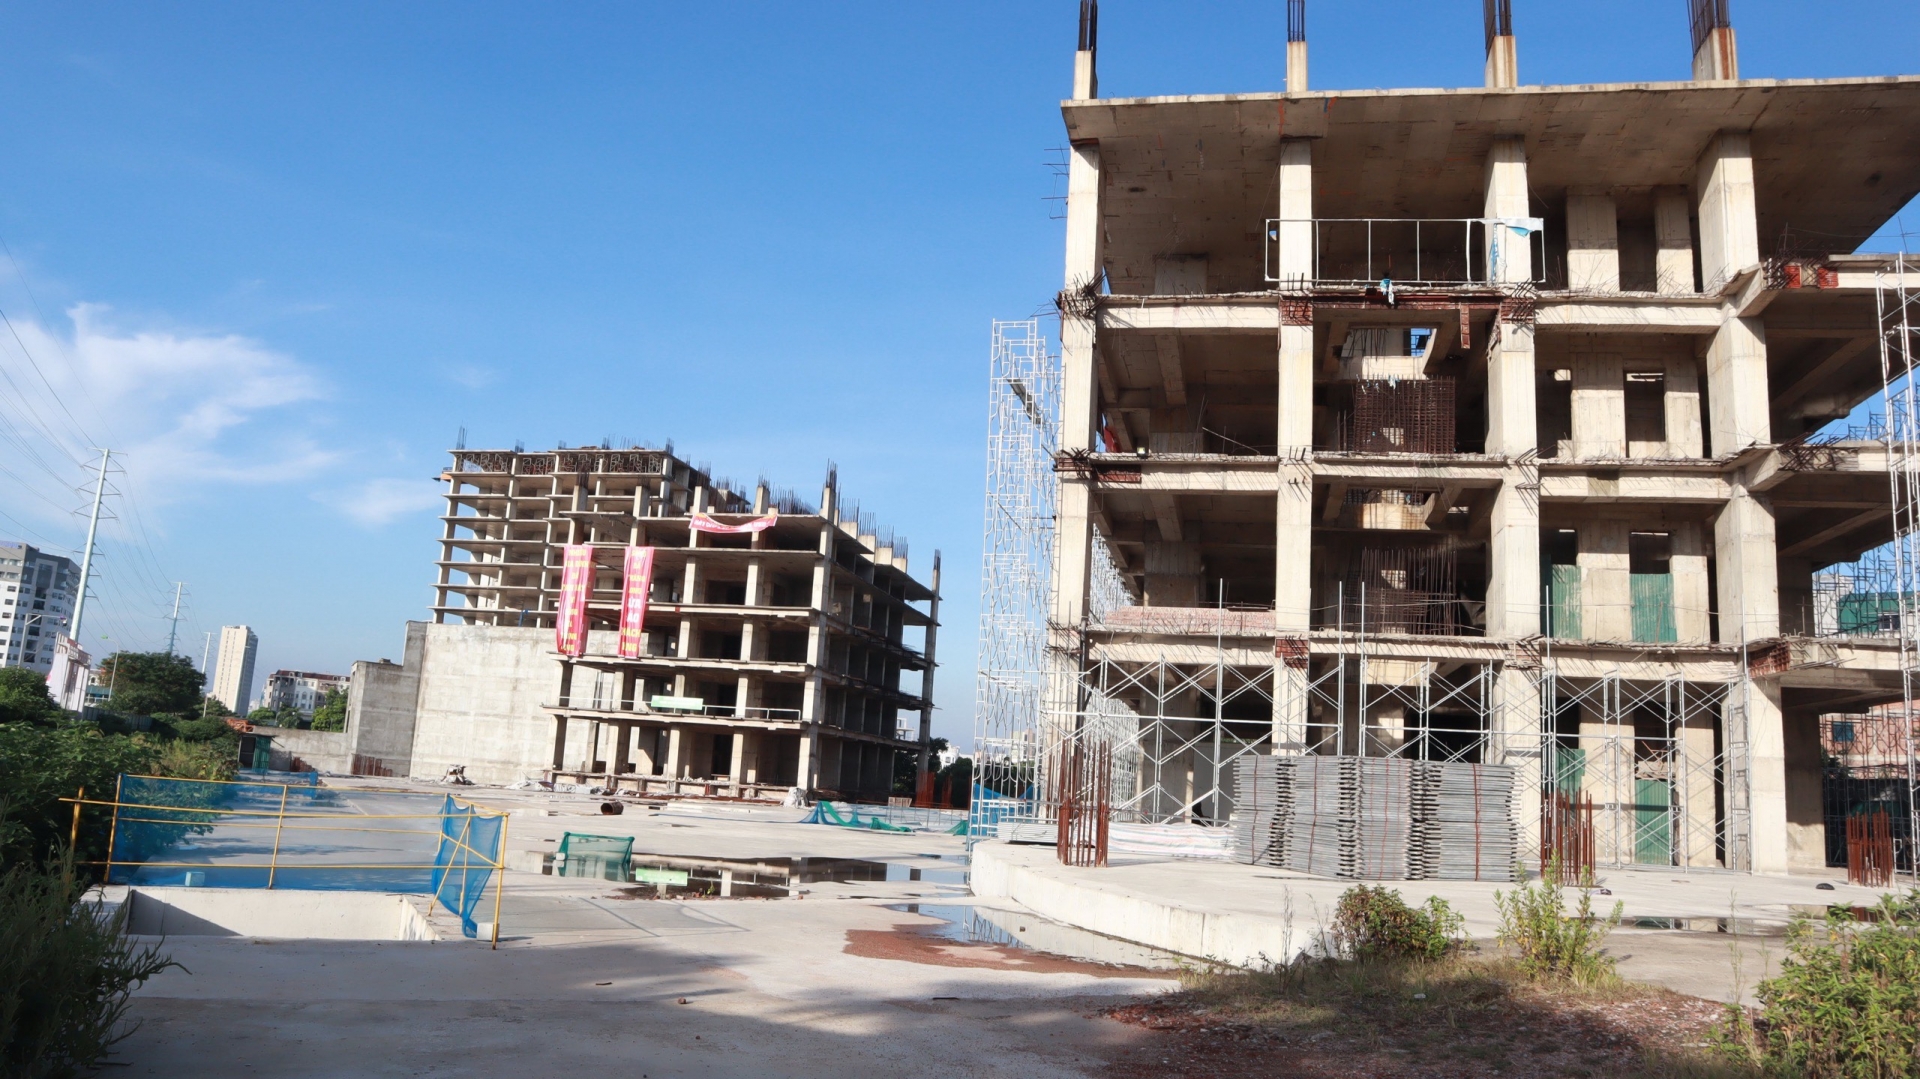 Bỏ tiền tỷ mua căn hộ tại Dự án Usilk City, sau hơn 10 năm vẫn “biệt vô âm tín”